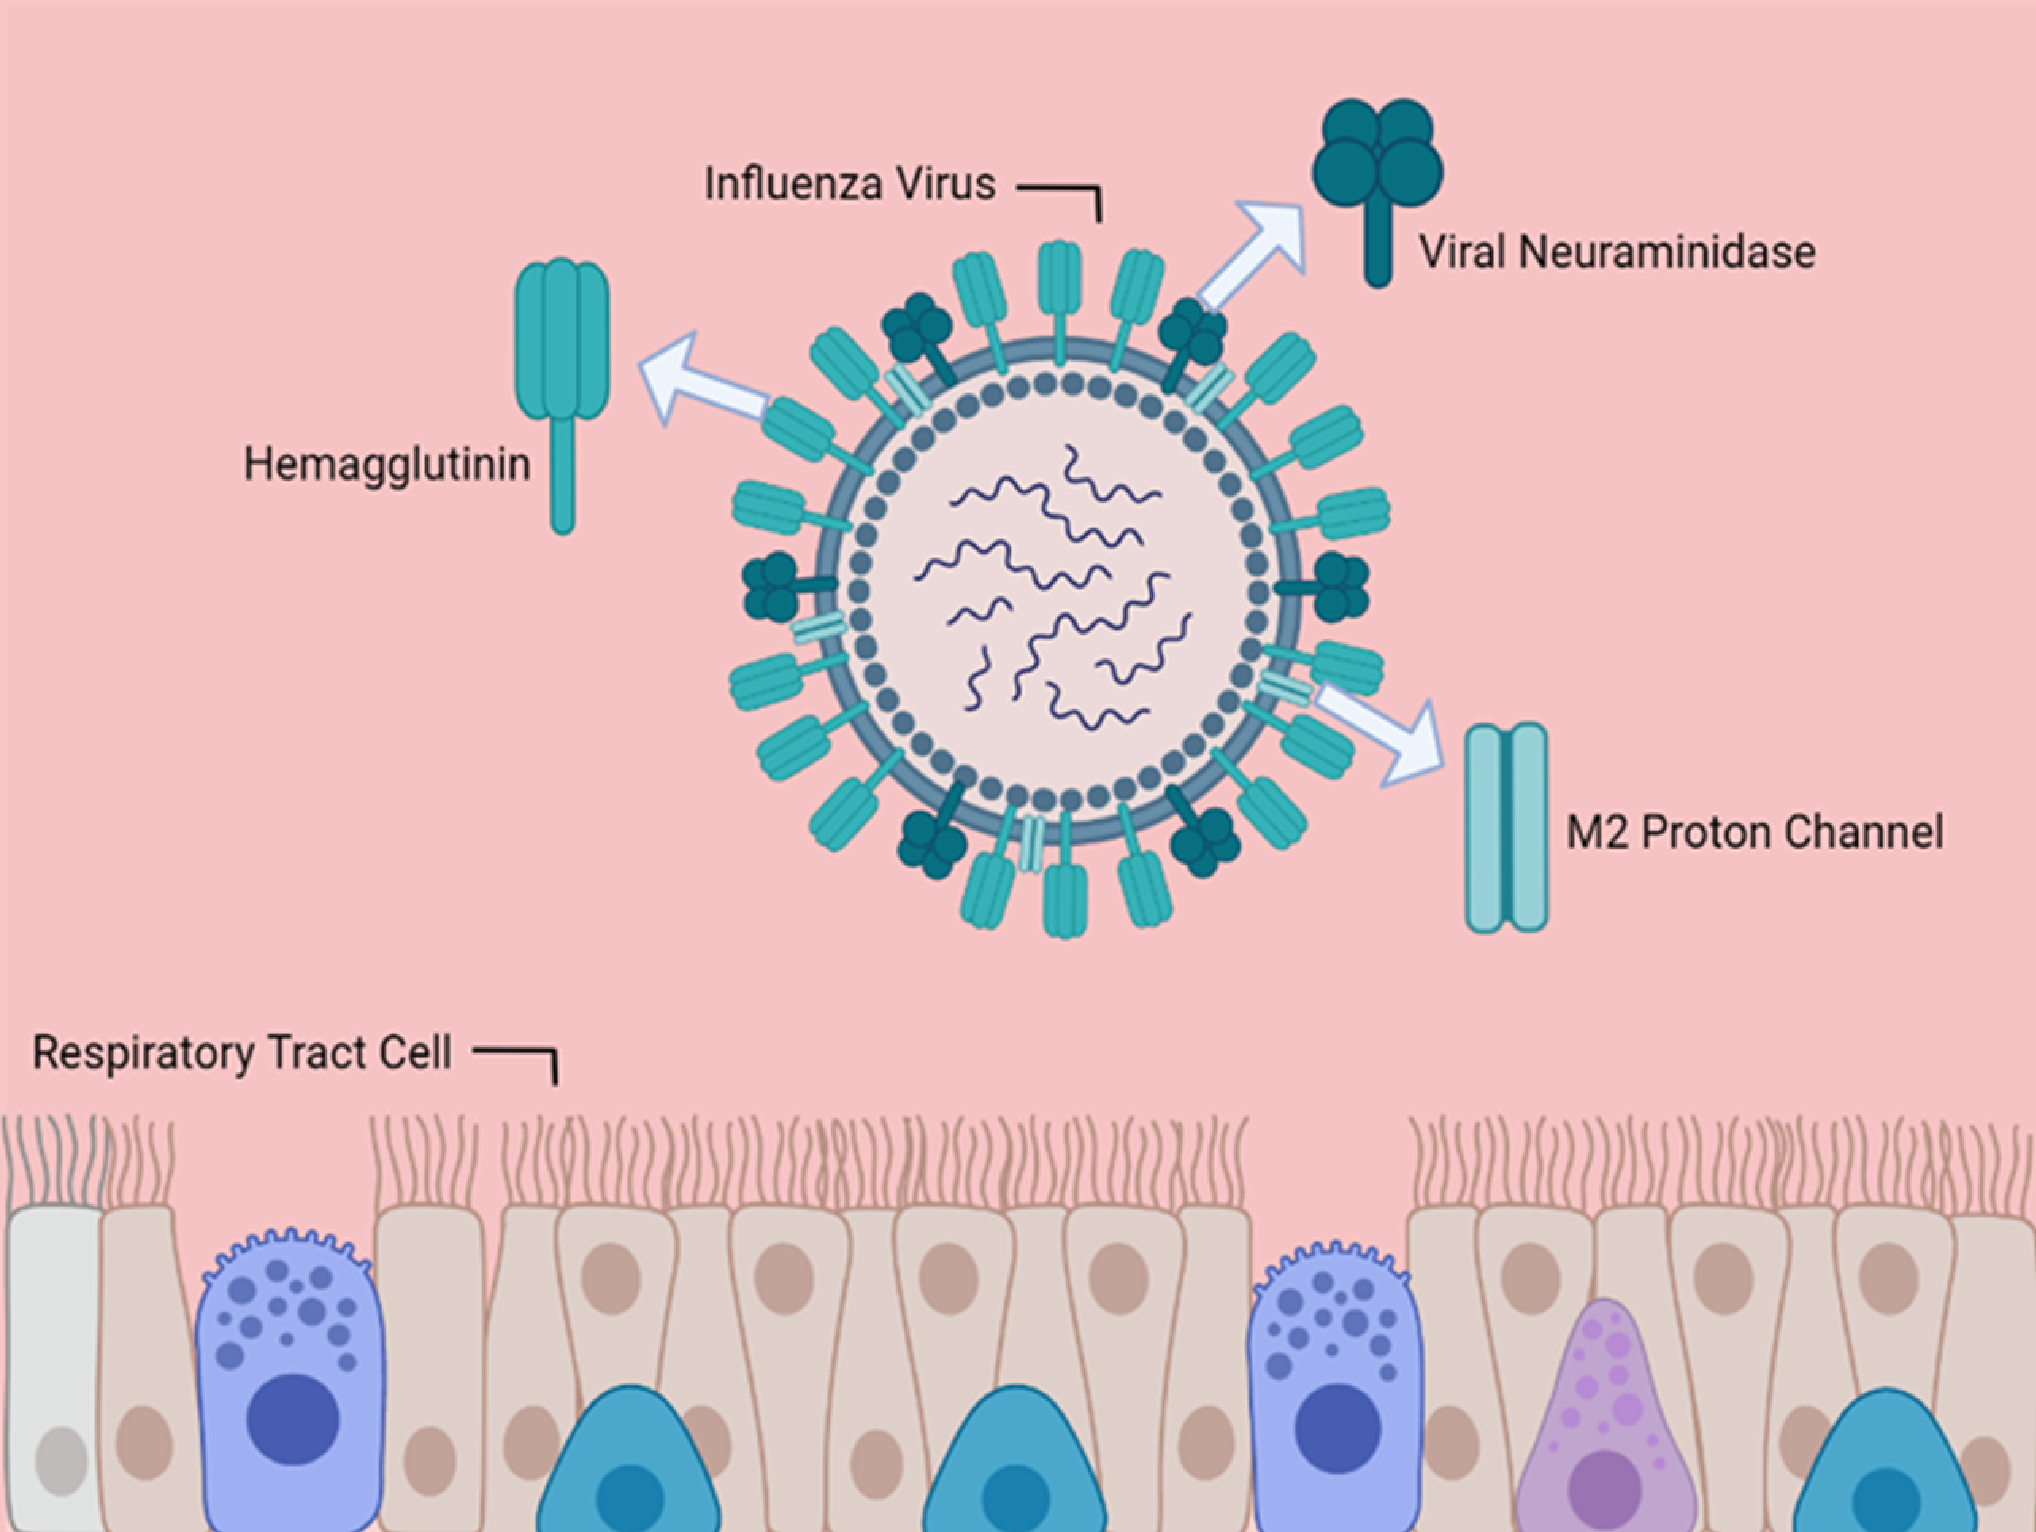 Figure 1. Structure of an Influenza Virus